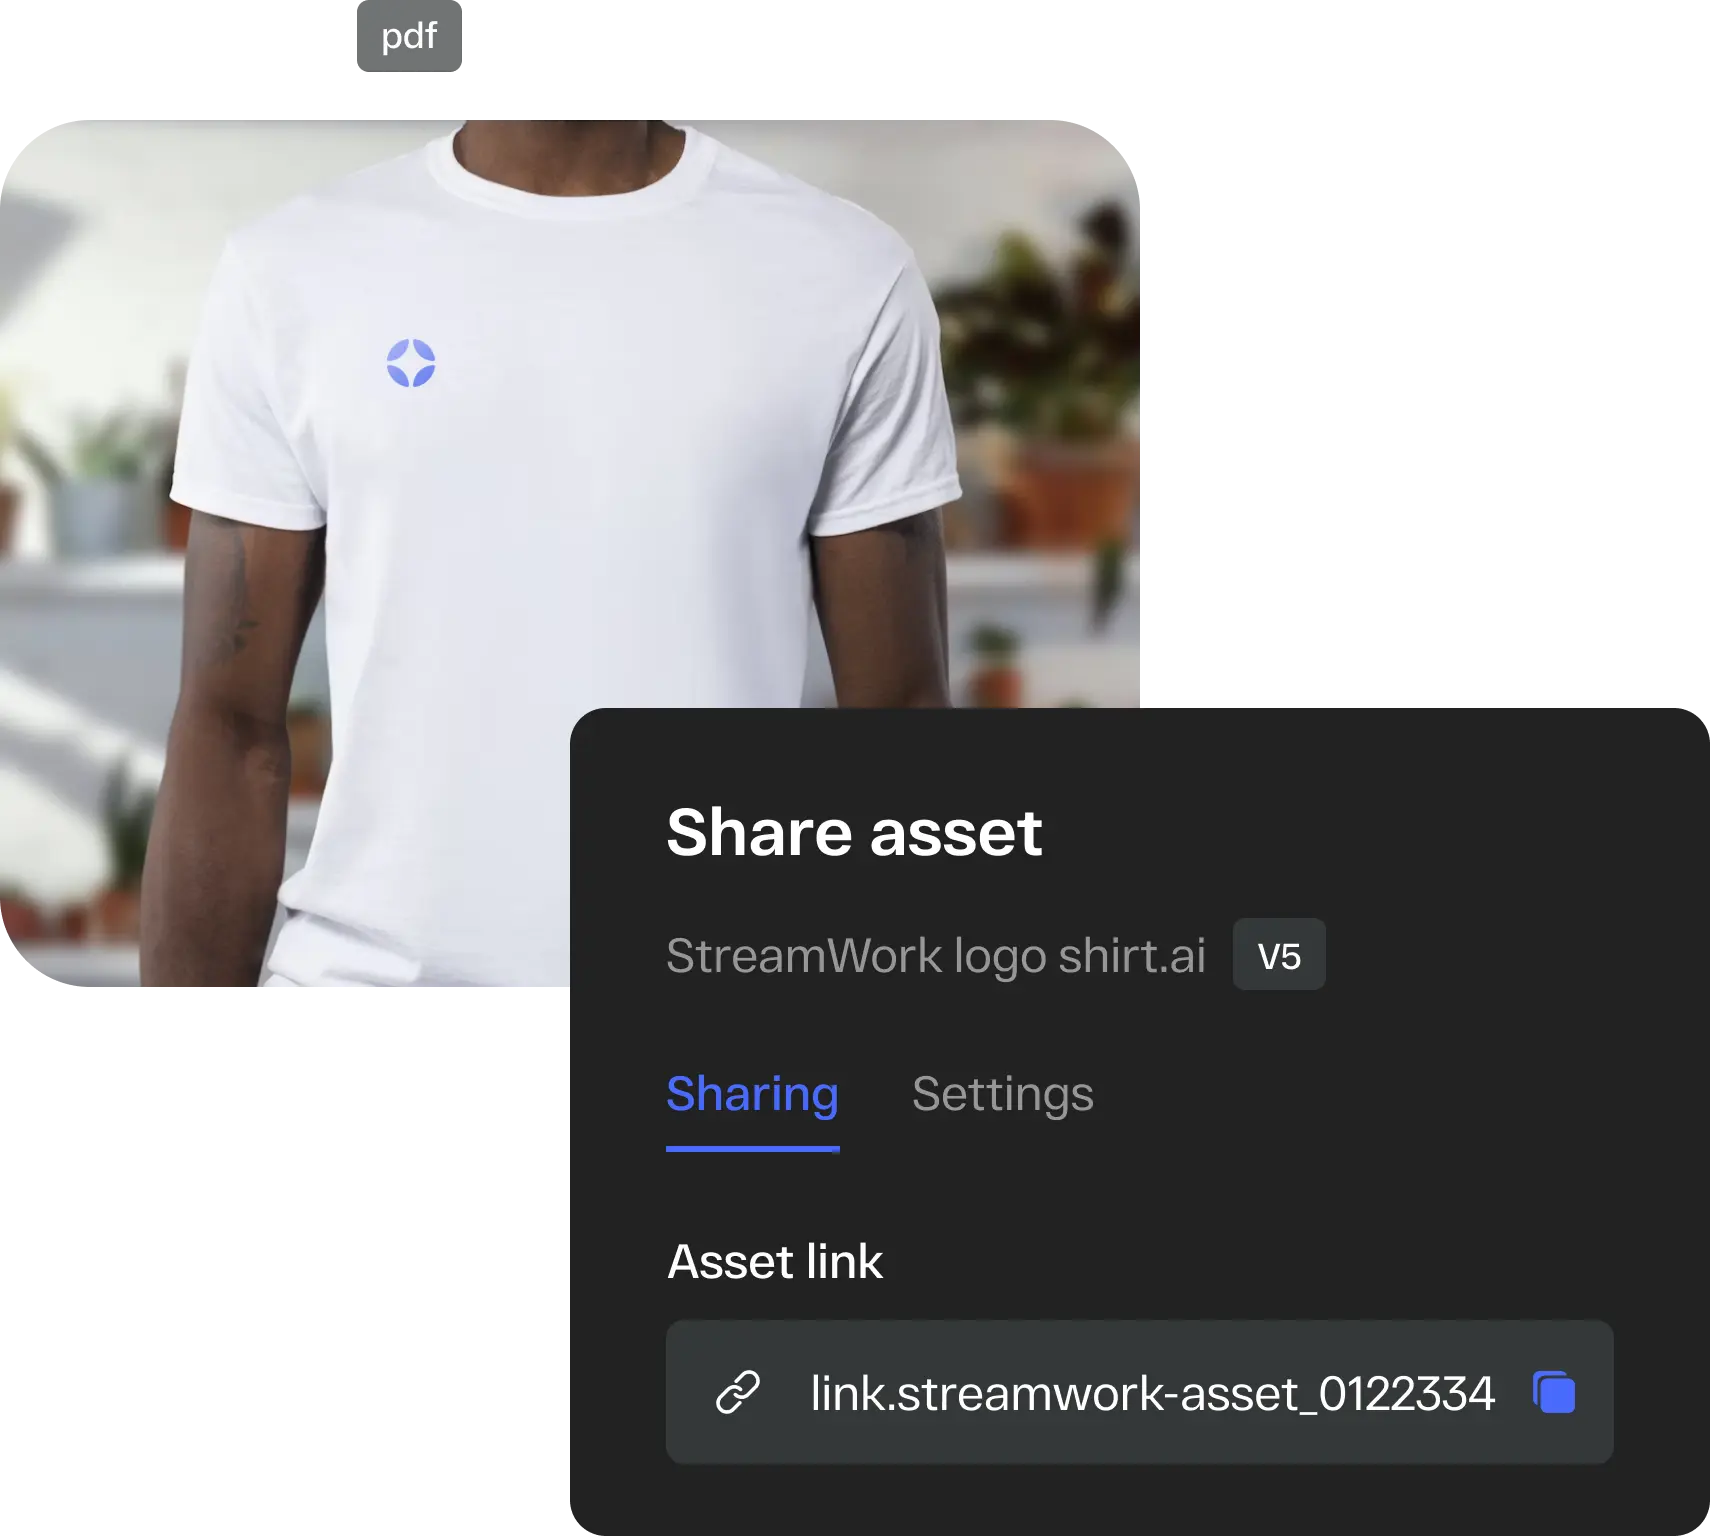 Streamwork share asset